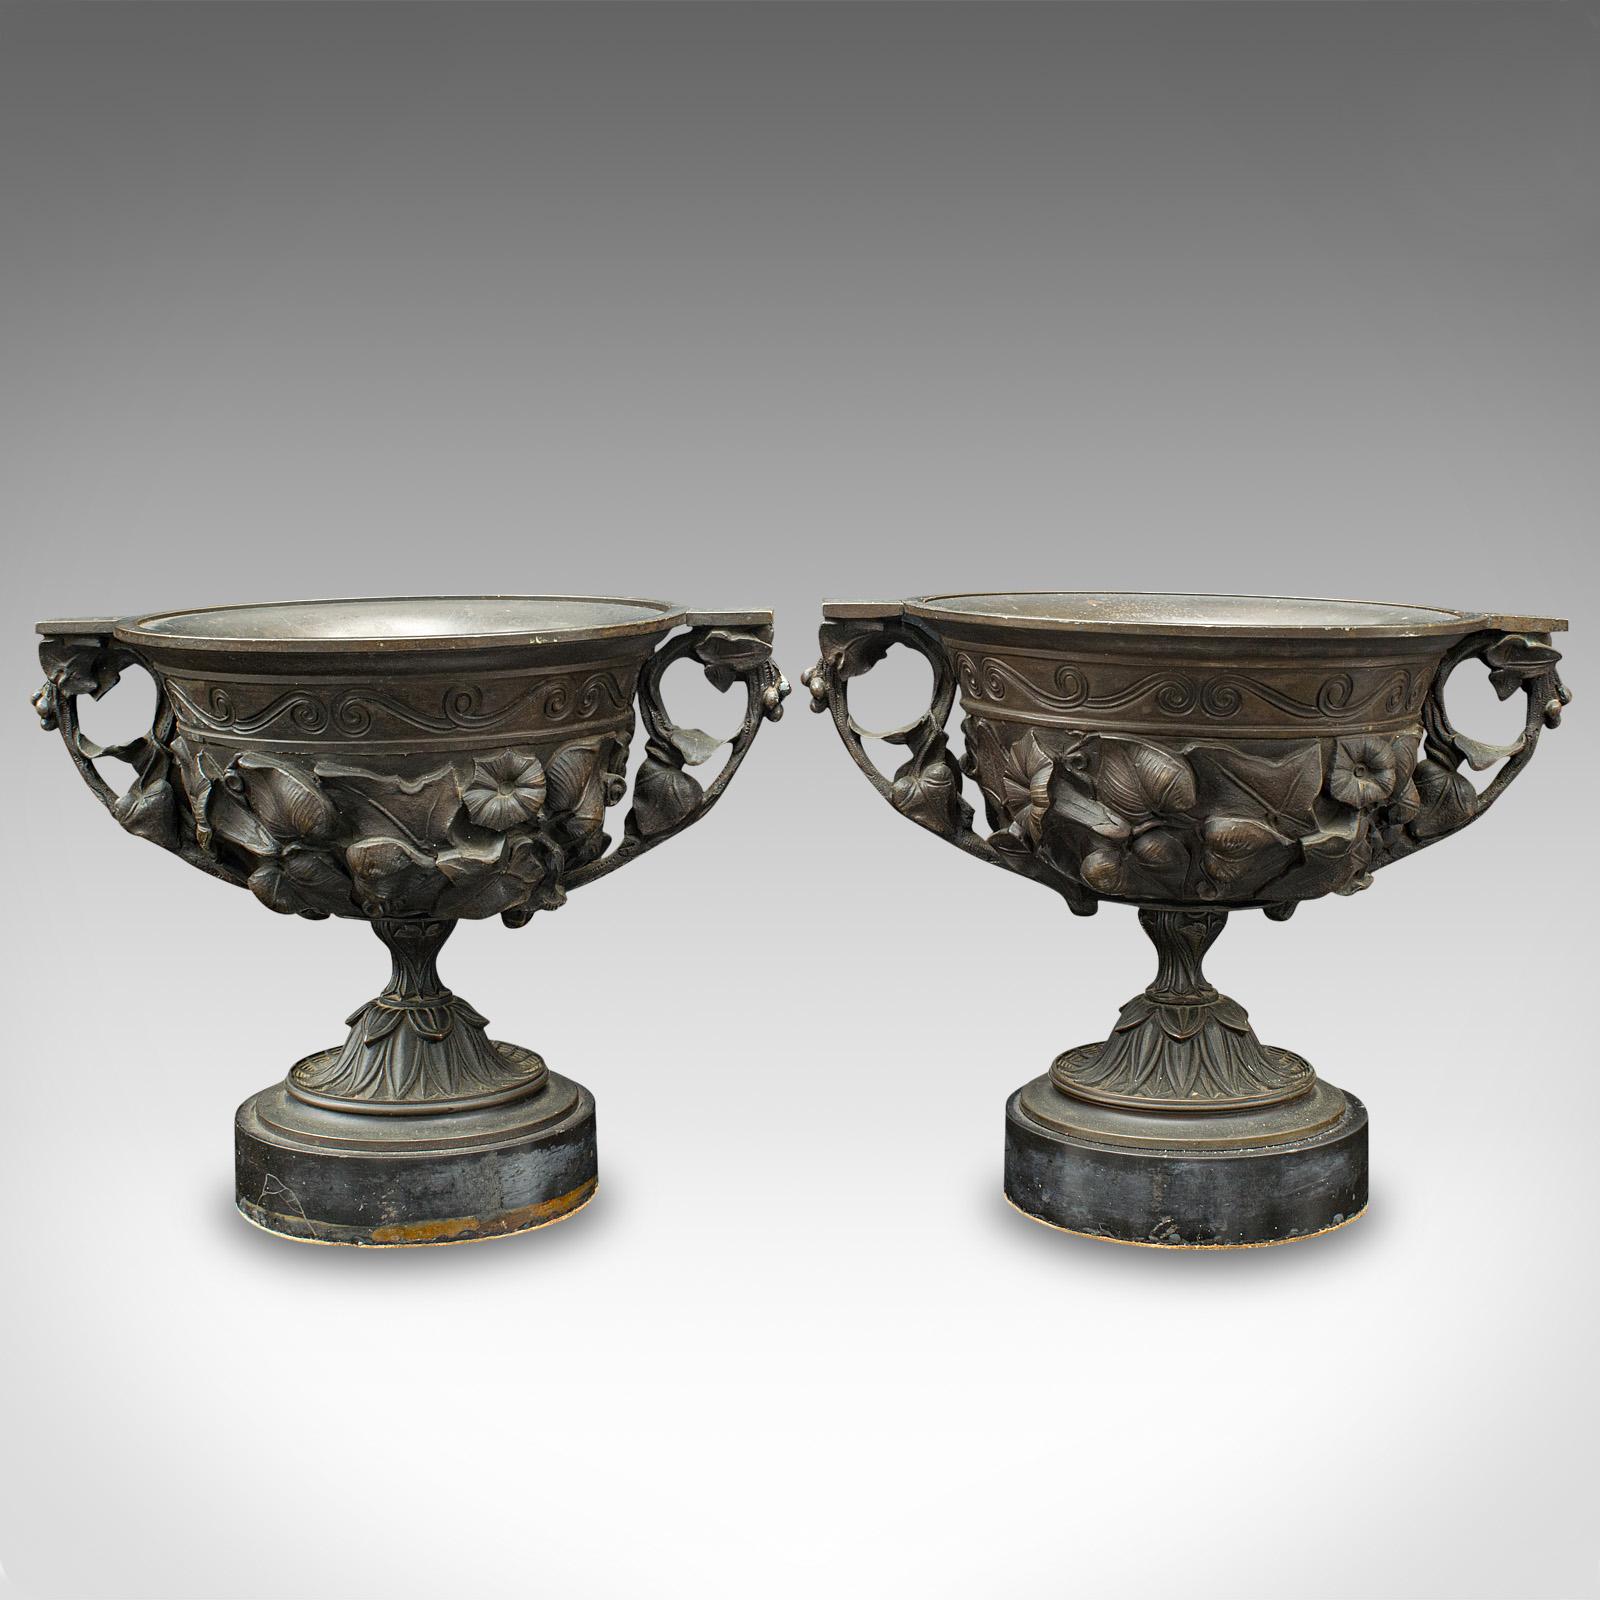 Il s'agit d'une grande paire de tasses à boire antiques. Un gobelet décoratif italien en bronze sur marbre dans le goût du Grand Tour, datant de la période victorienne, vers 1850.

Bel exemple de décor en relief, à l'époque du Grand Tour
Présente